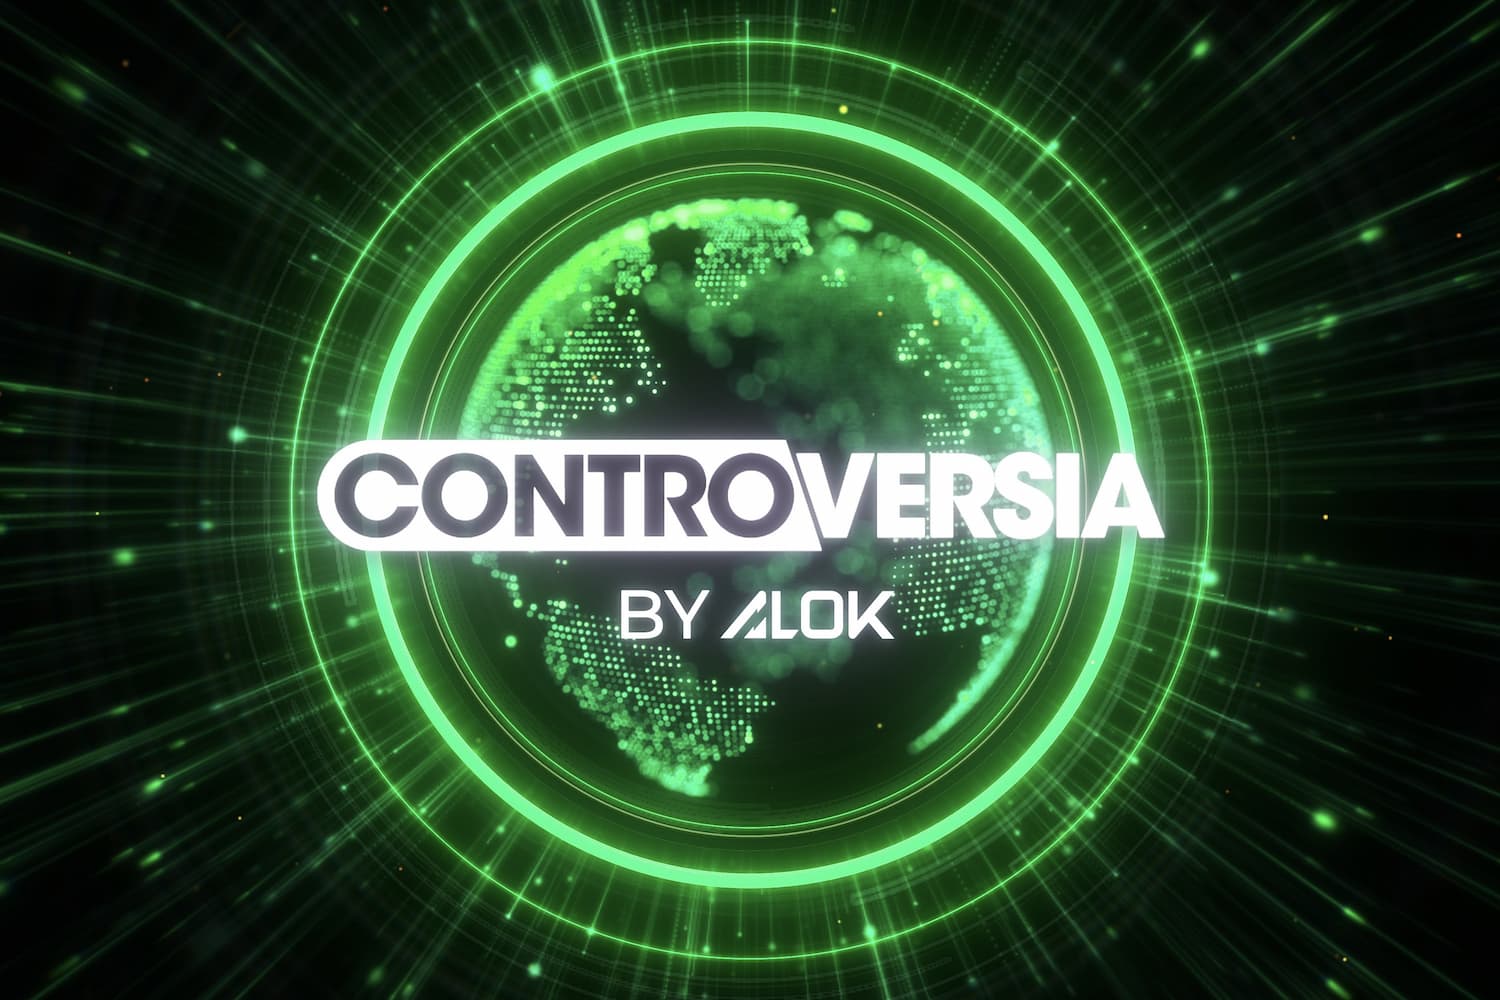 Alok apresenta compilação "CONTROVERSIA by Alok Vol. 006"